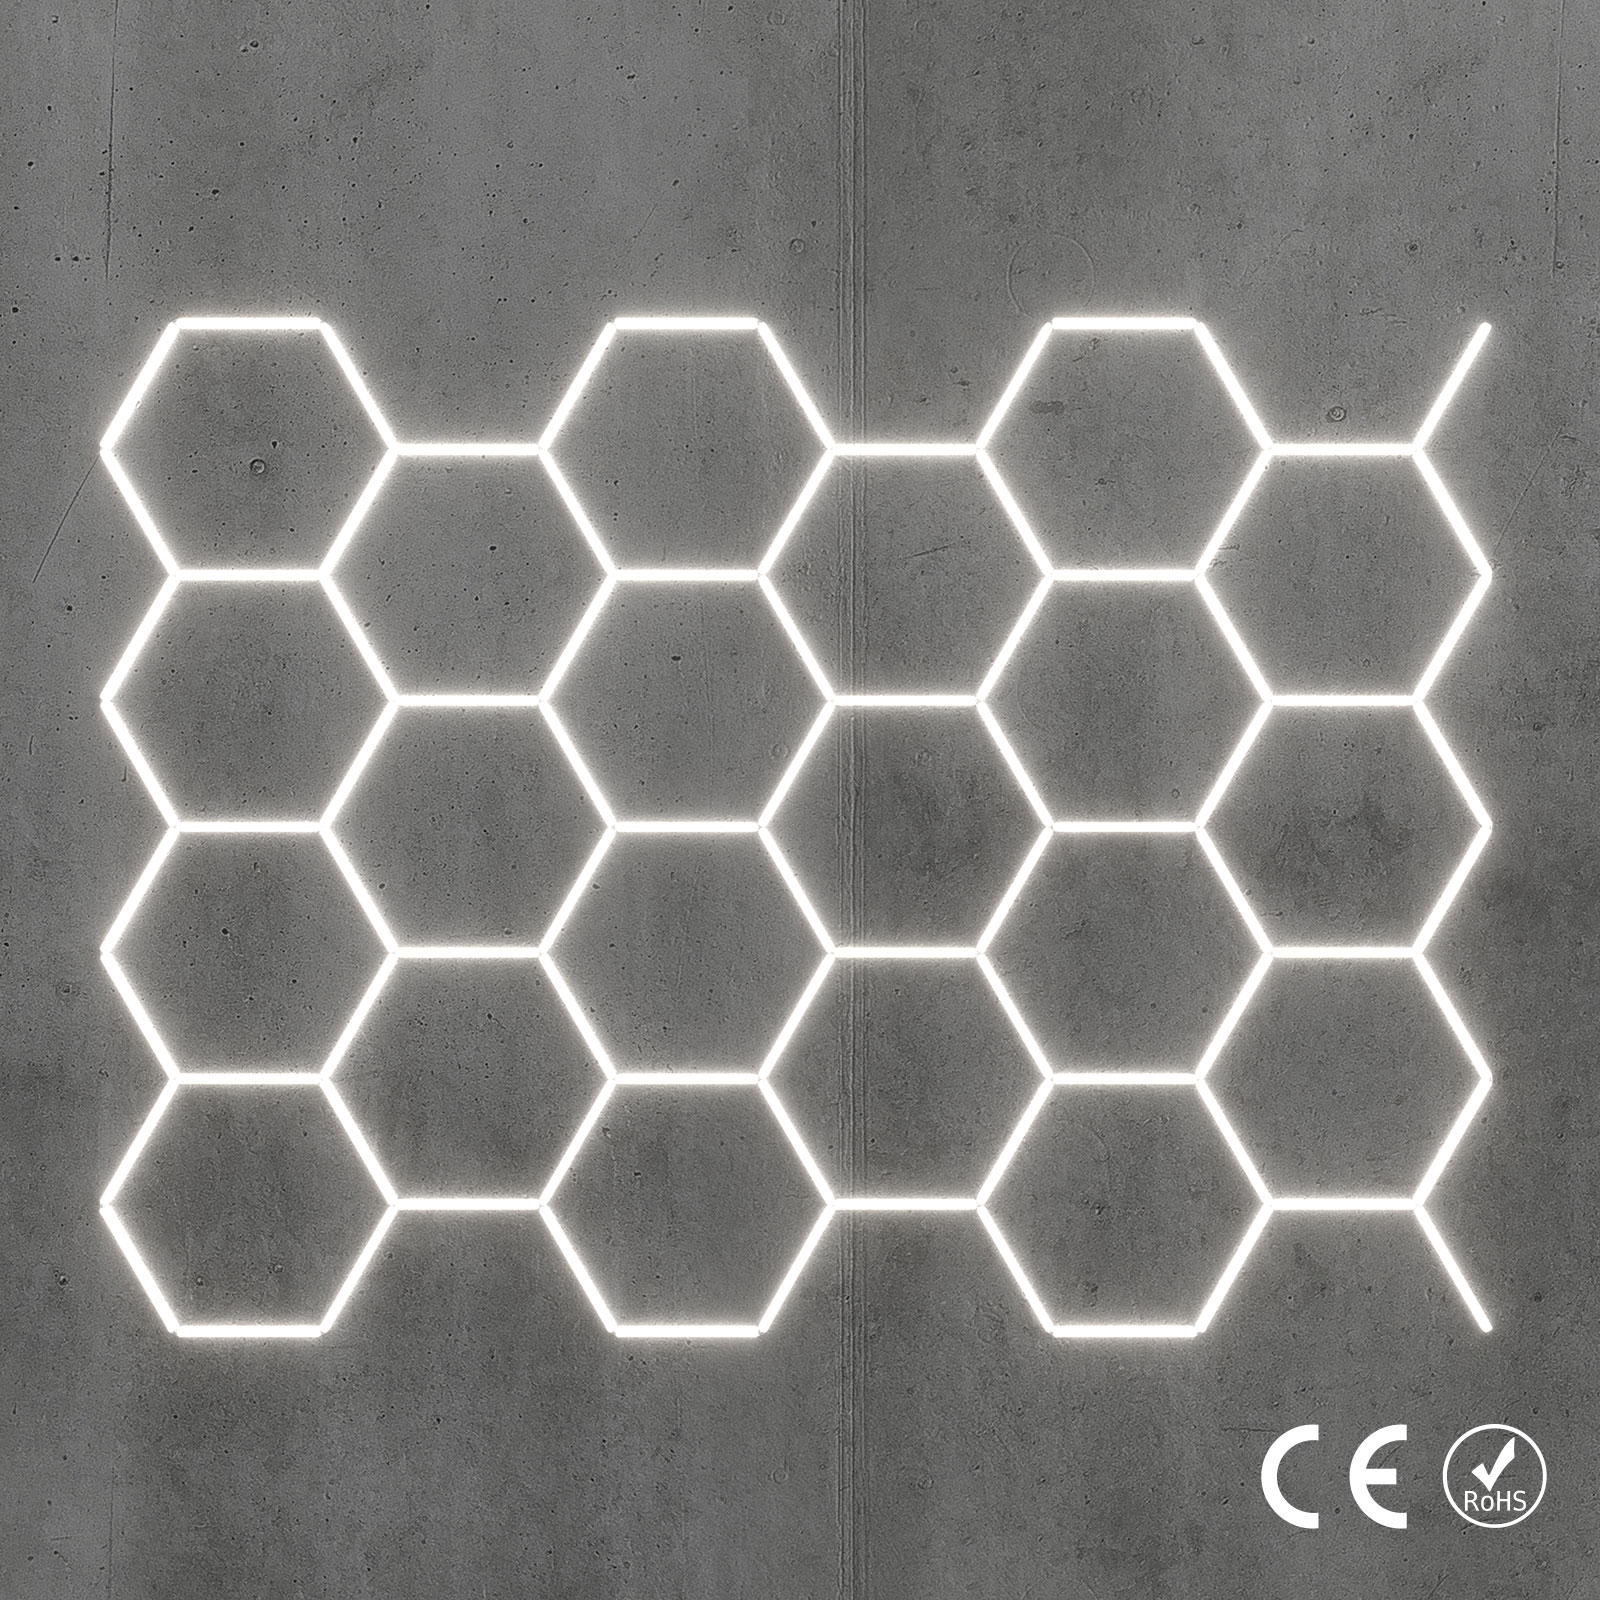 Hexagon LED-Deckenbeleuchtung Set